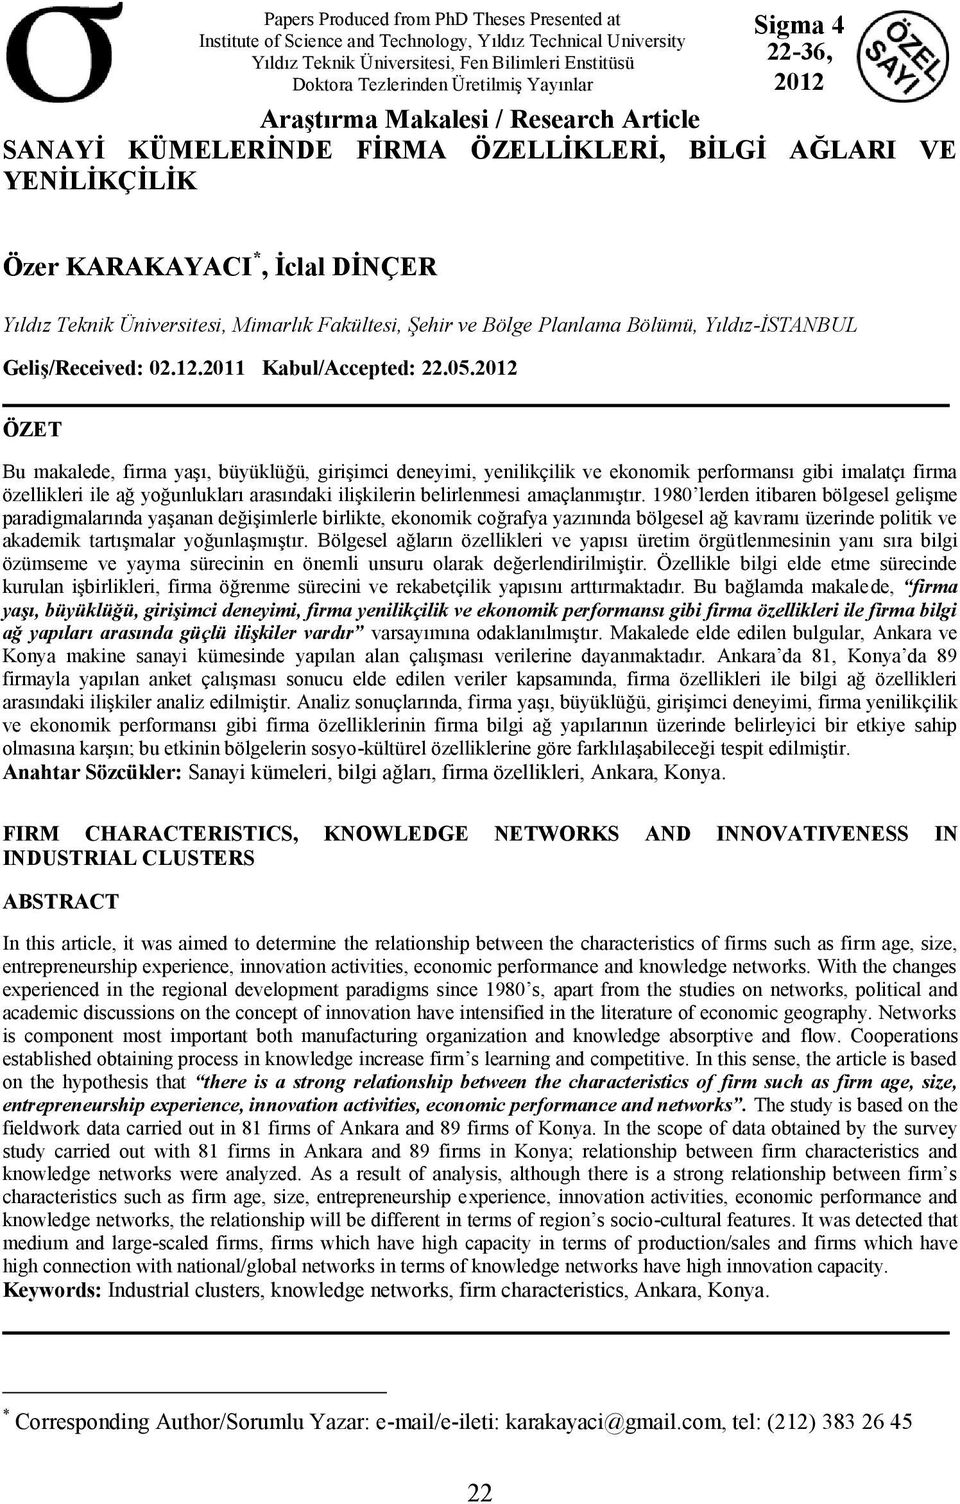 Mimarlık Fakültesi, Şehir ve Bölge Planlama Bölümü, Yıldız-İSTANBUL Geliş/Received: 02.12.2011 Kabul/Accepted: 22.05.